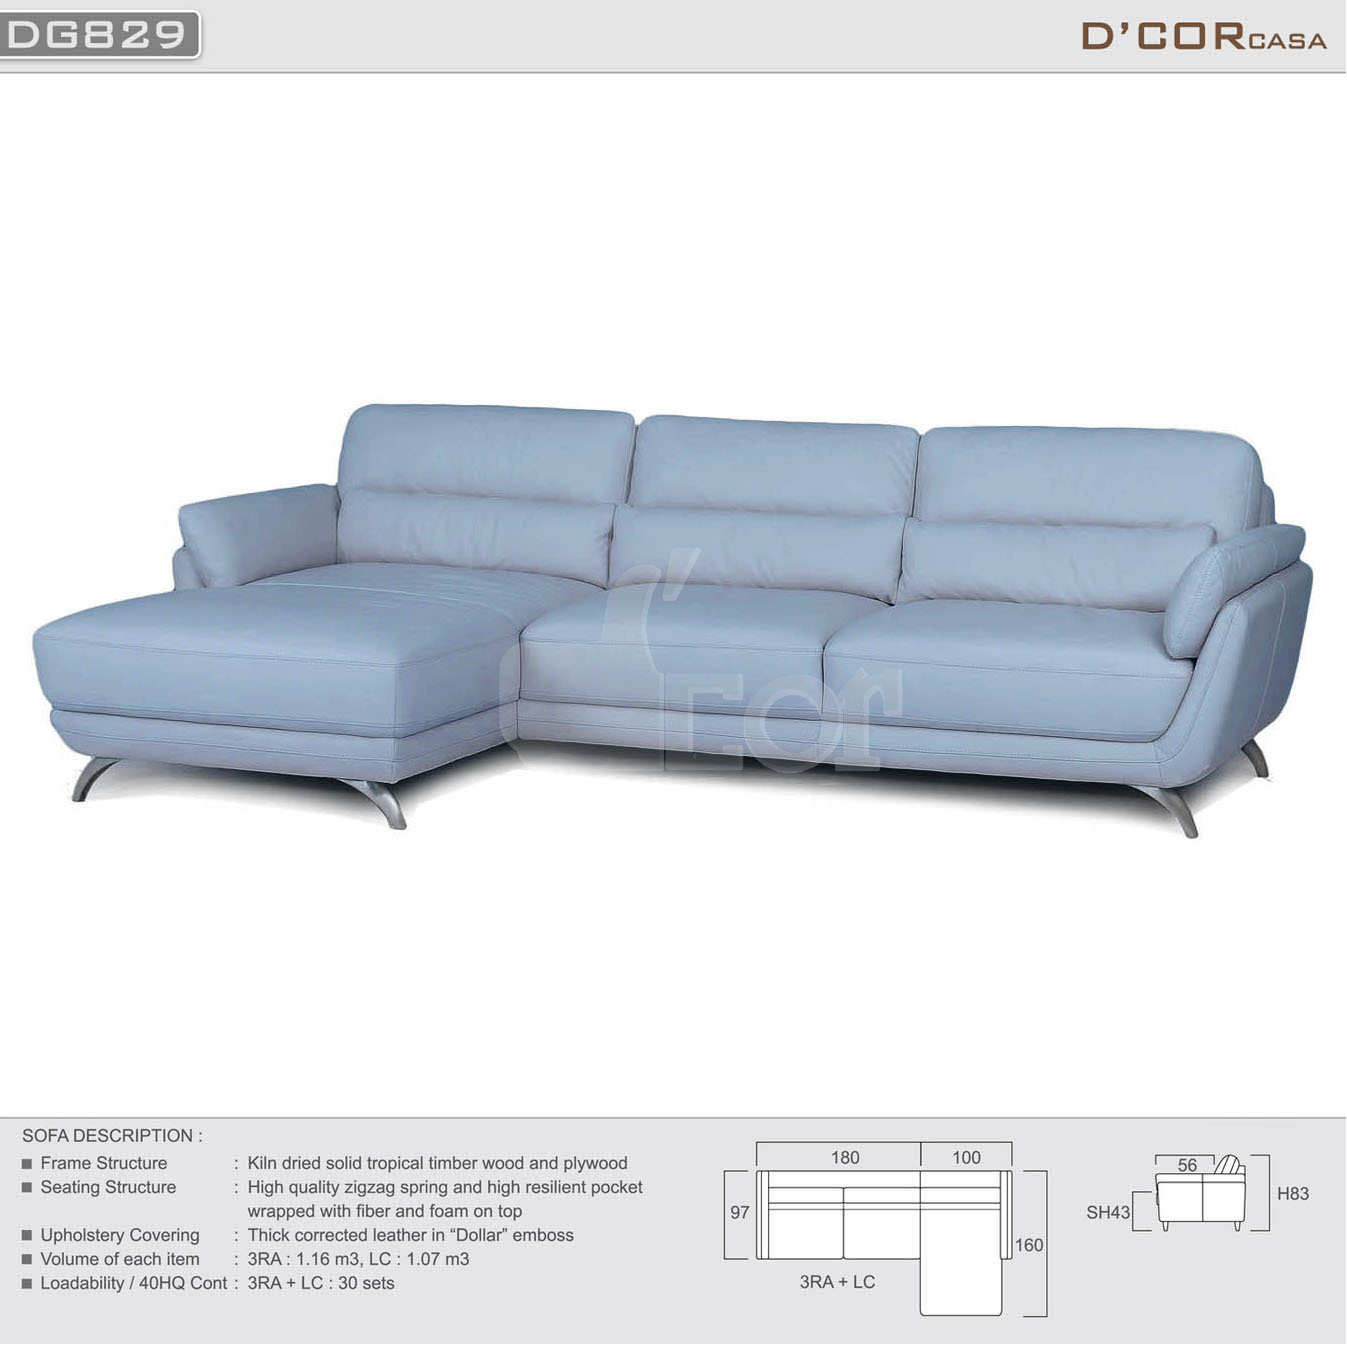 Mềm mại, êm ái bậc nhất là sofa nhập khẩu Malaysia SG829 > 